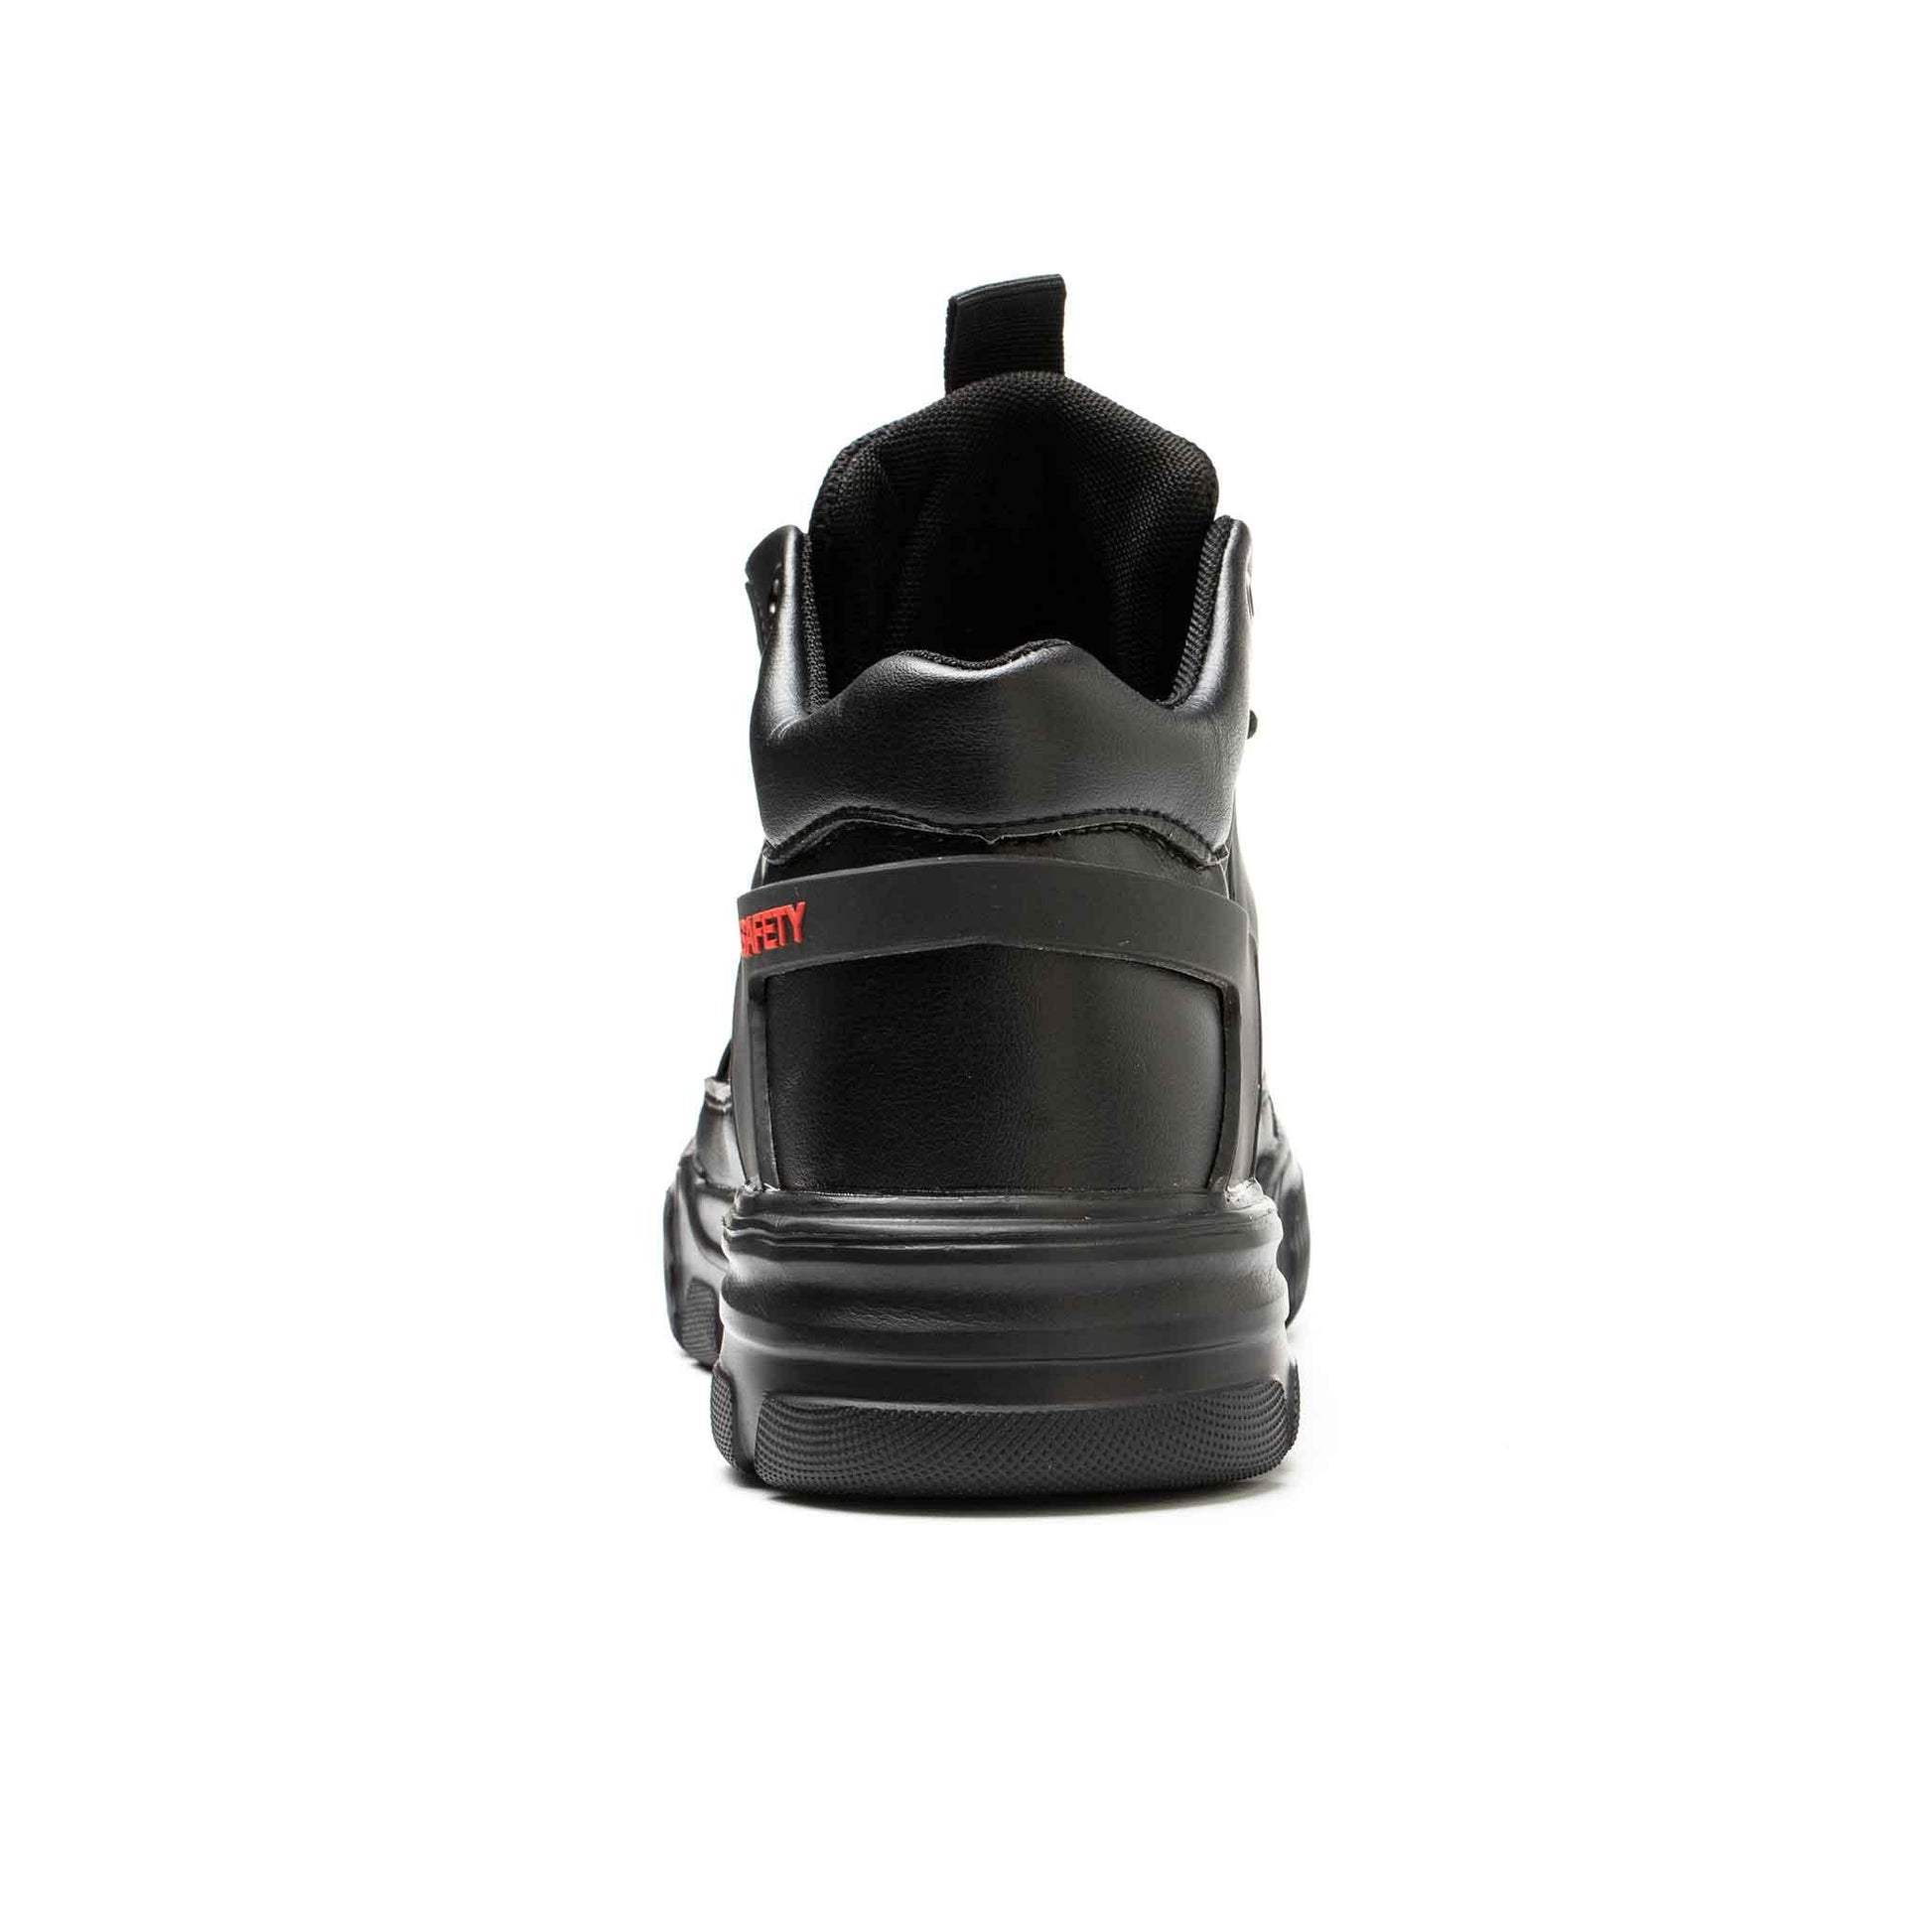 Men's Steel Toe Boots - Rubber Sole | B153 - USINE PRO Footwear